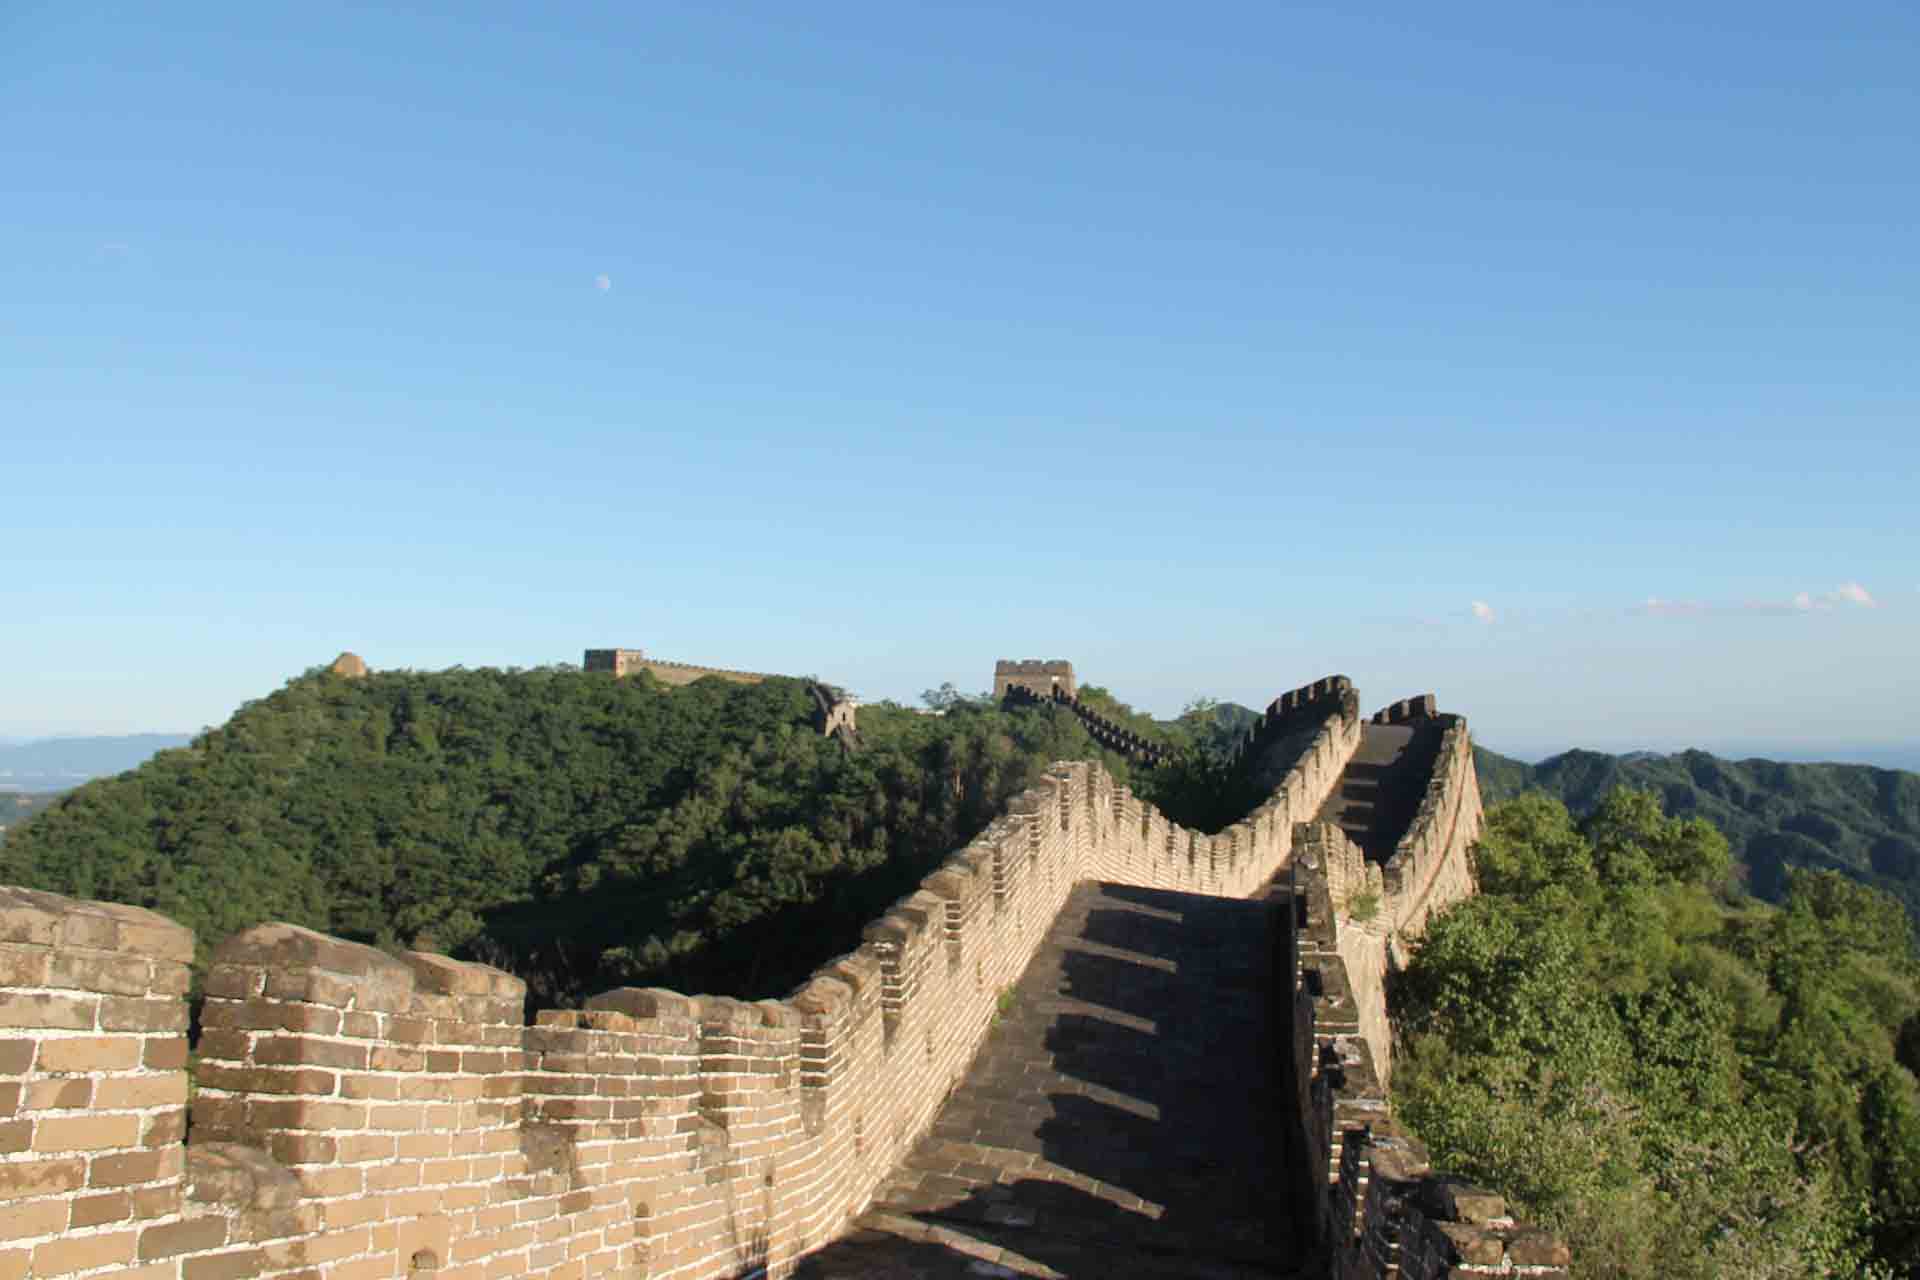 Grande Muraglia Cinese